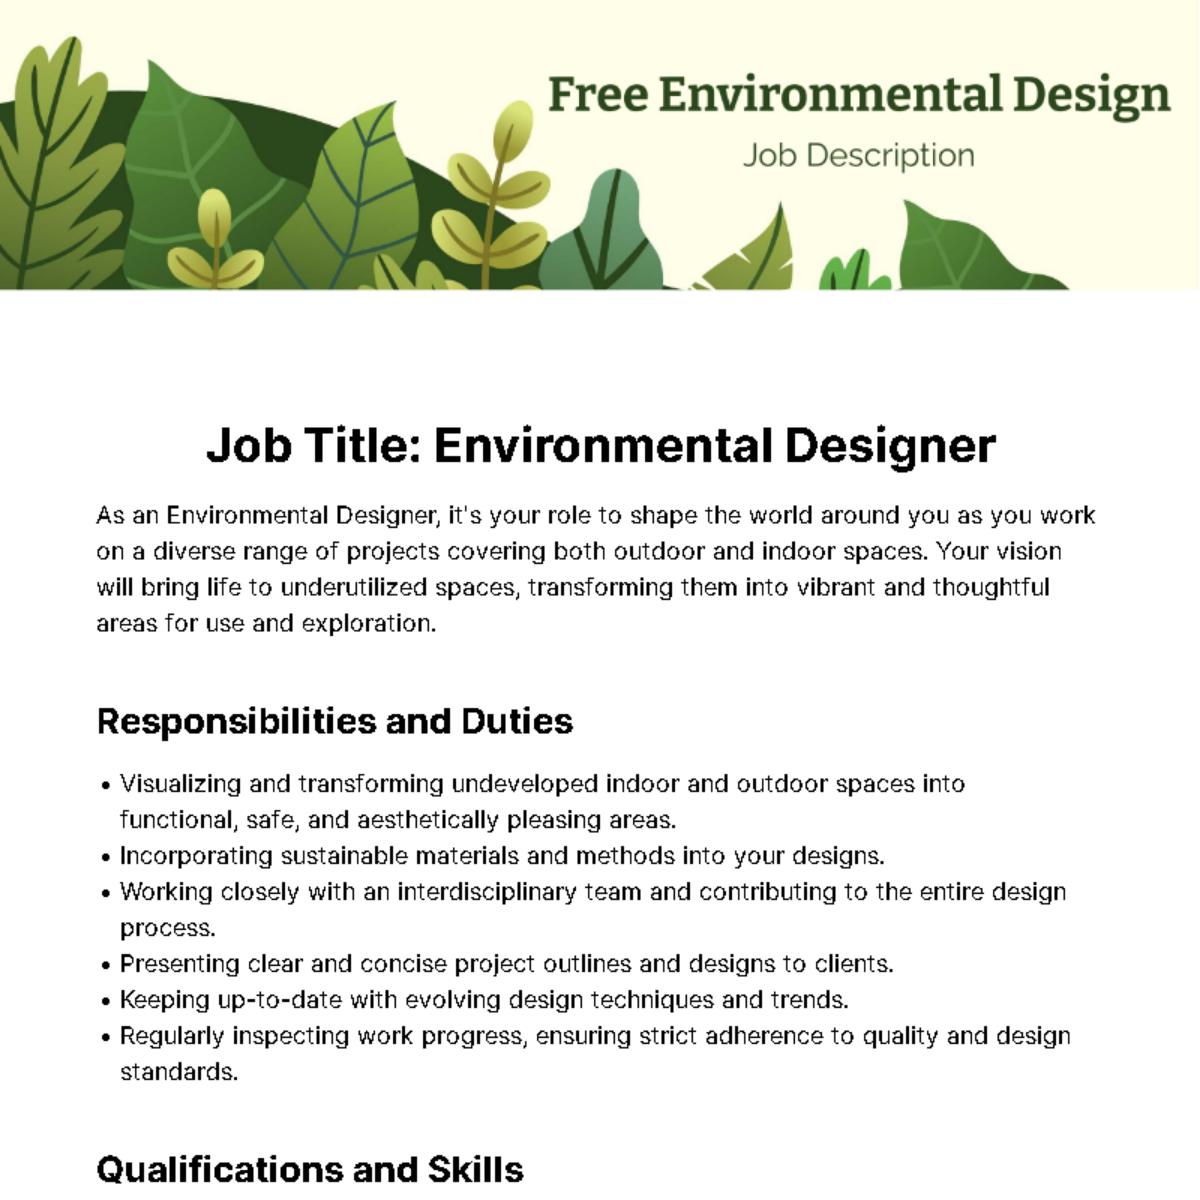 Free Environmental Design Job Description Template